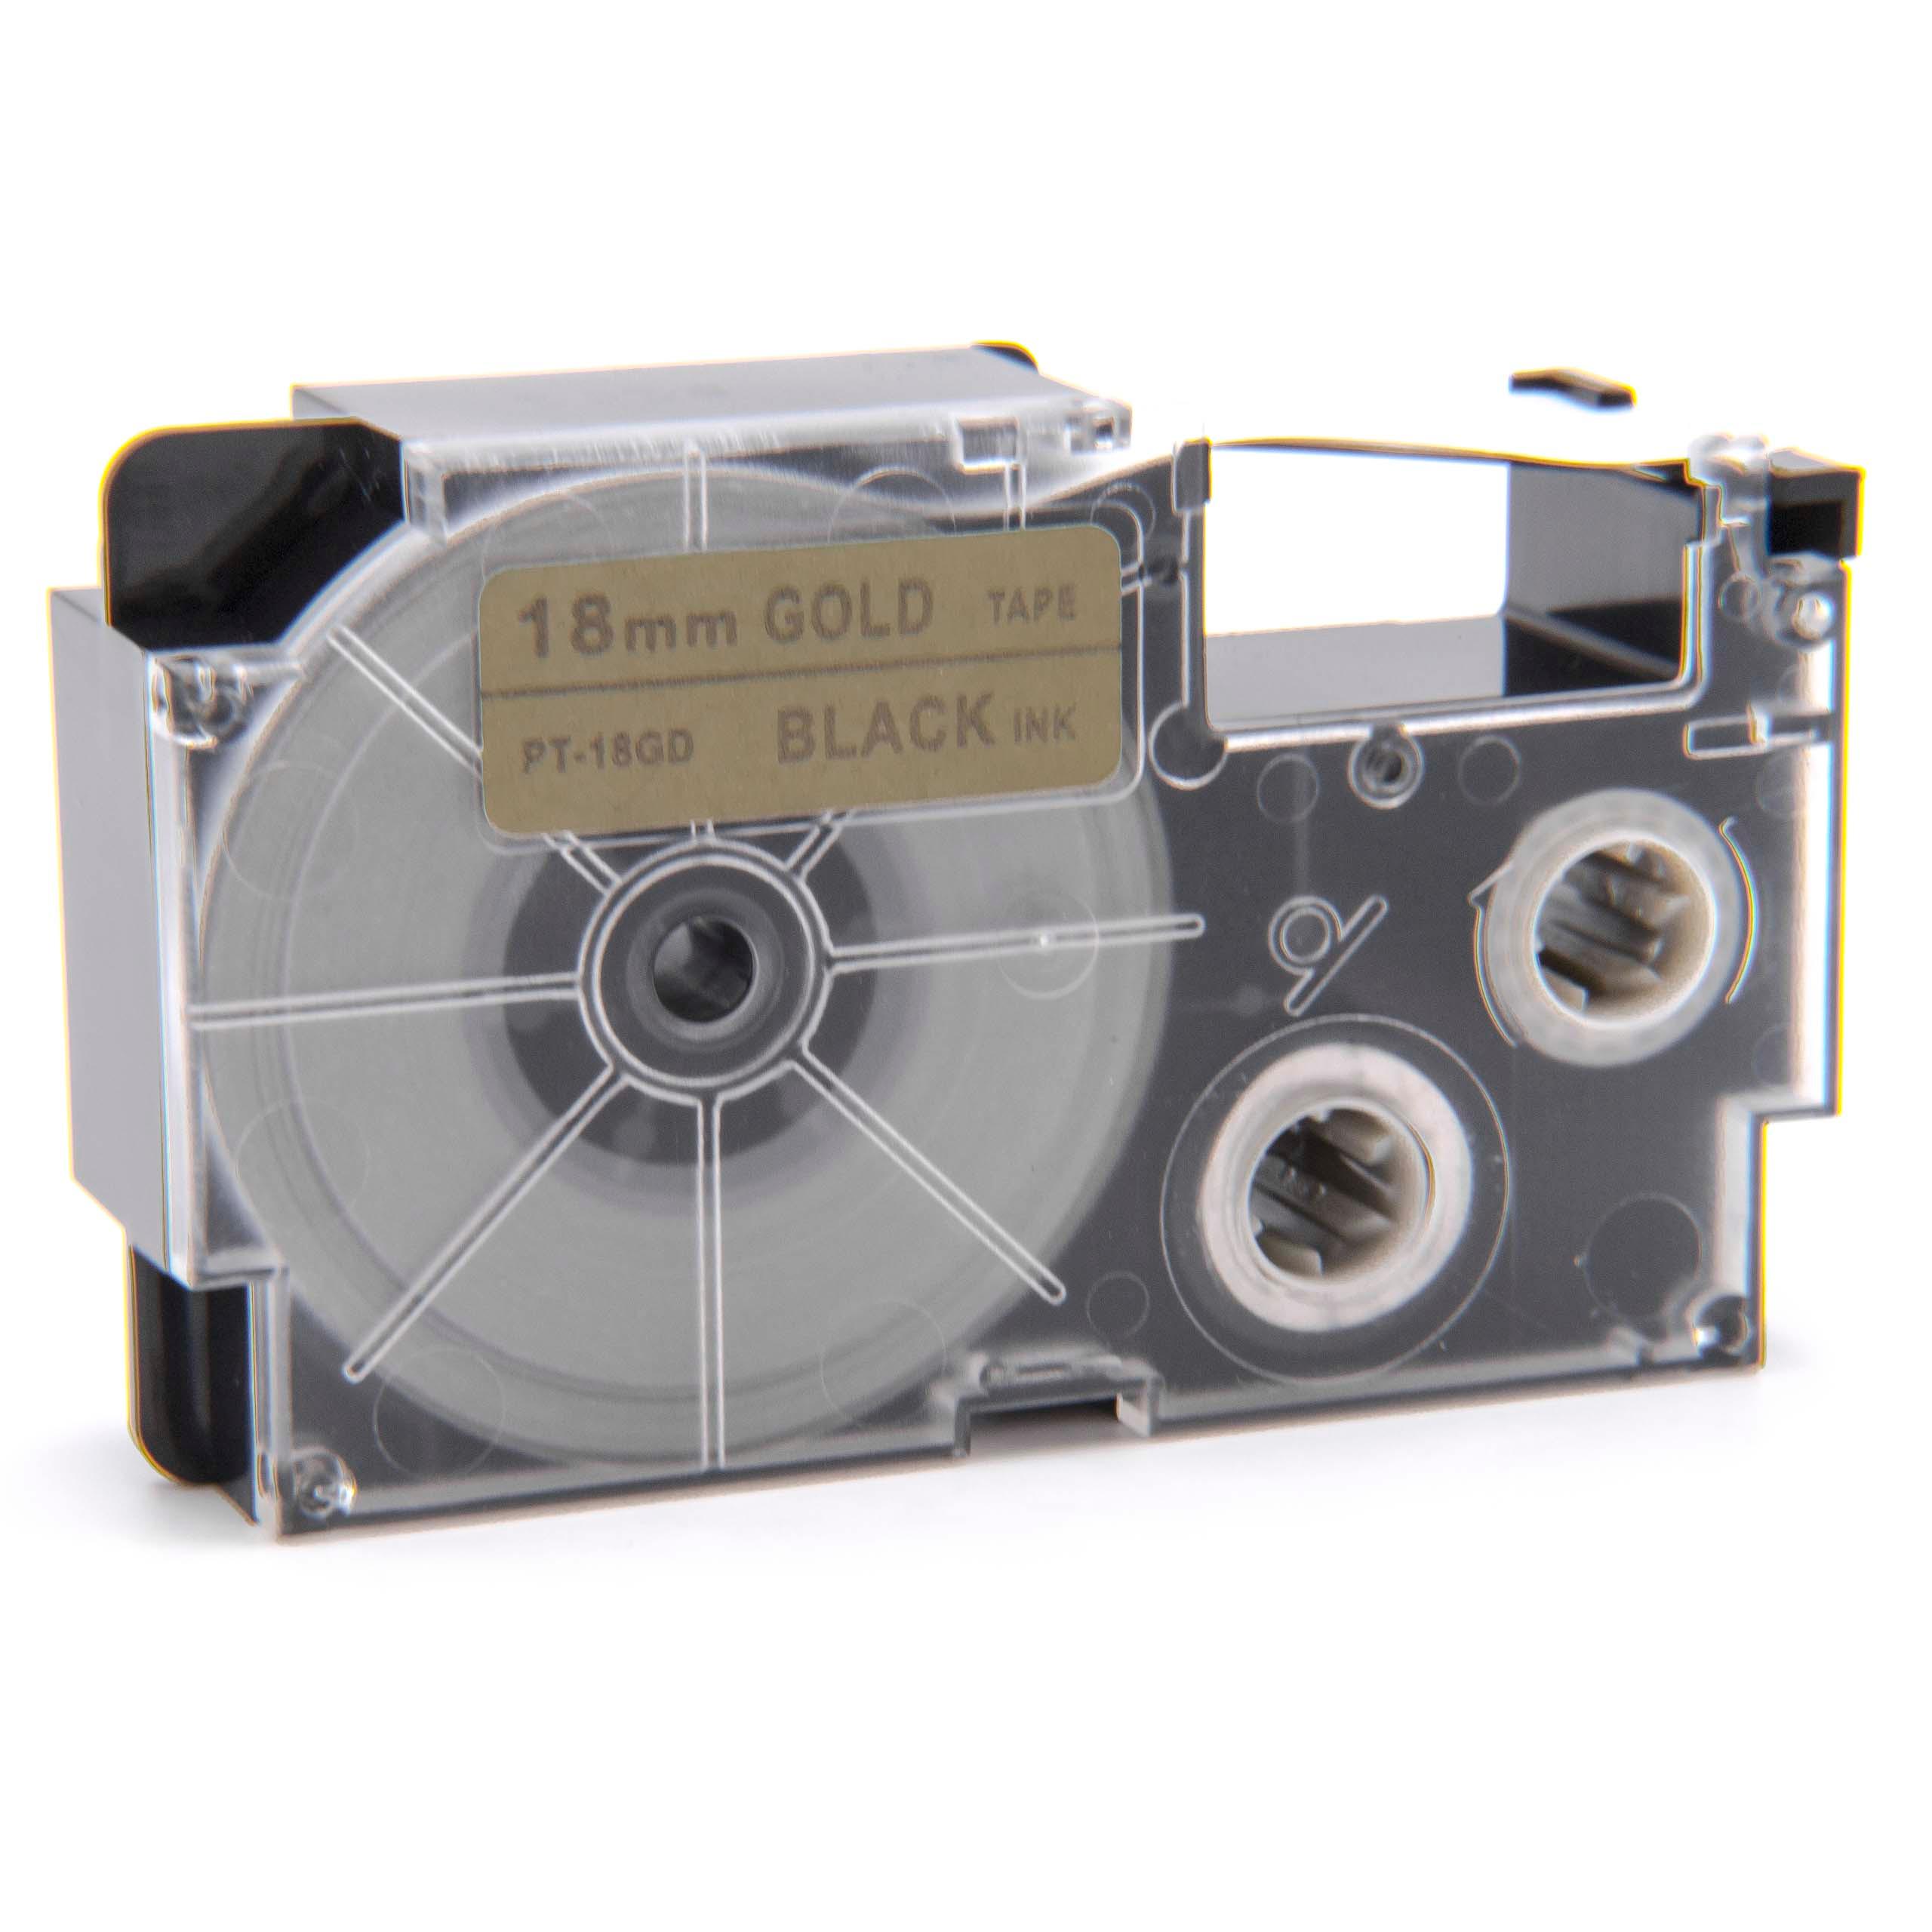 Cassetta nastro sostituisce Casio XR-18GD, XR-18GD1 per etichettatrice Casio 18mm nero su dorato, pet+ RESIN